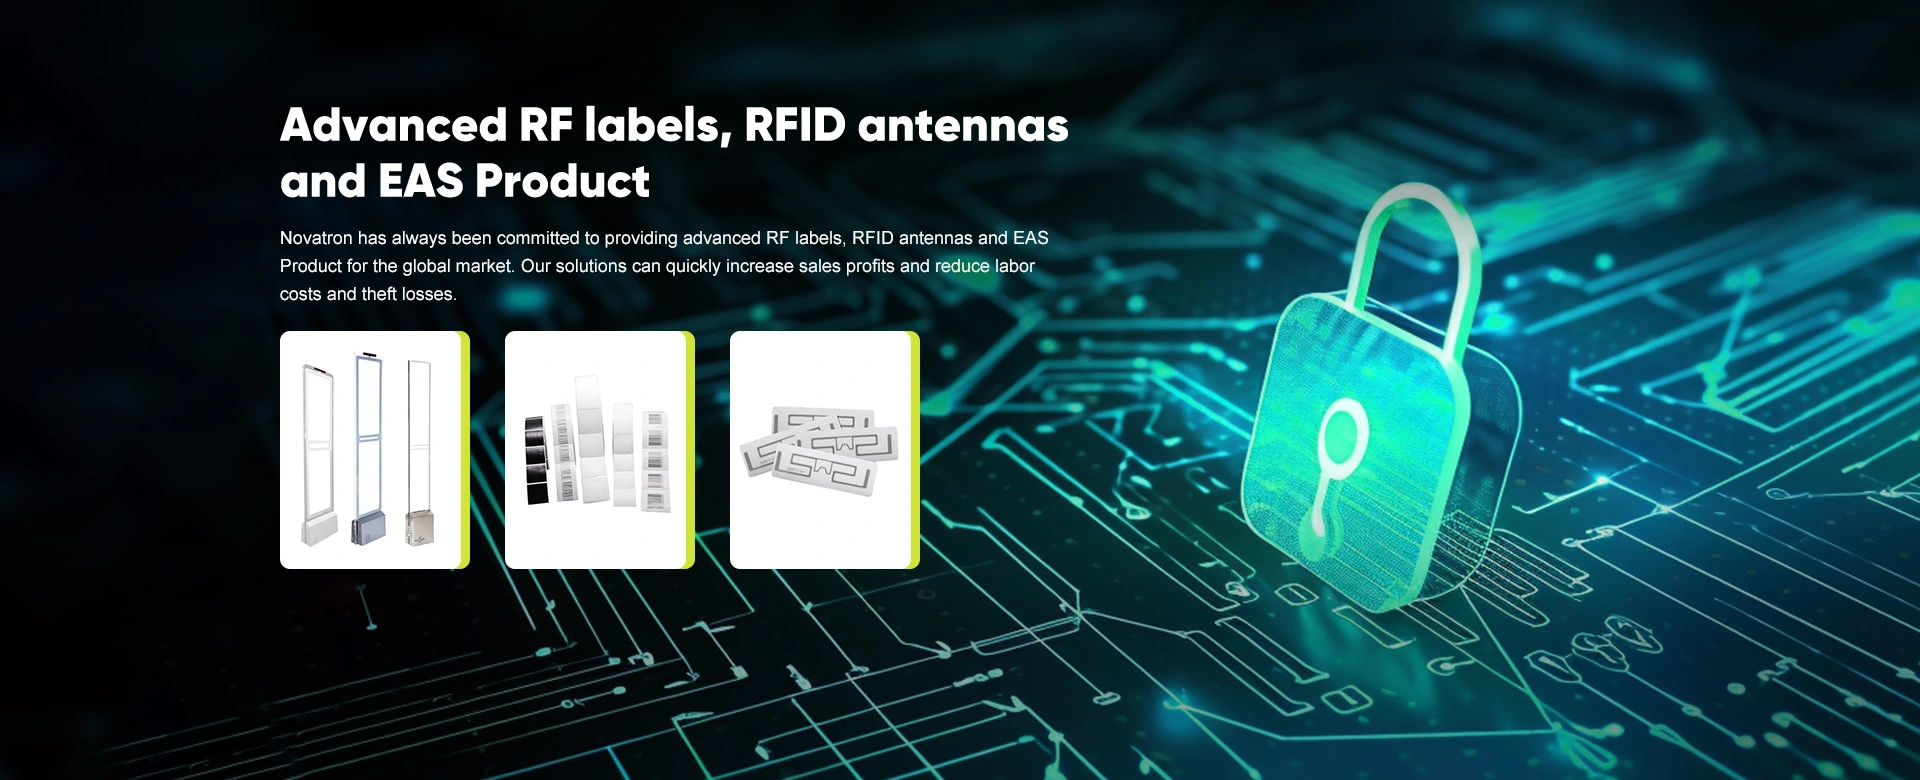 Etiquetas RF avanzadas, antenas RFID y producto EAS